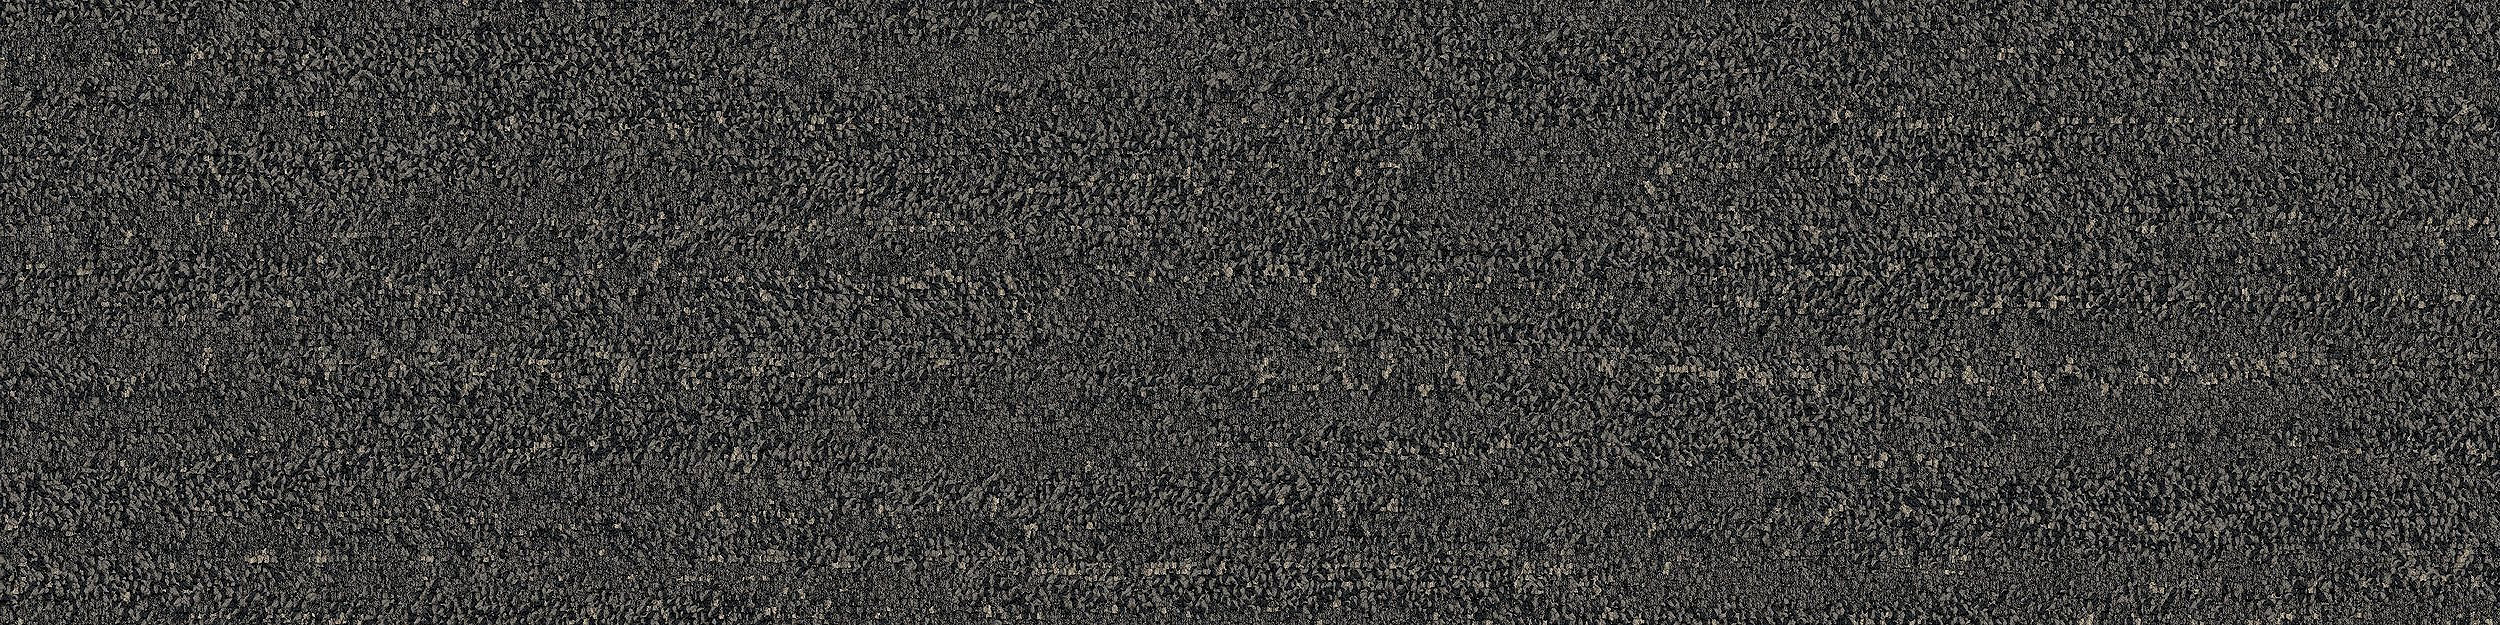 Rockland Road Carpet Tile In Charcoal Quarry numéro d’image 4